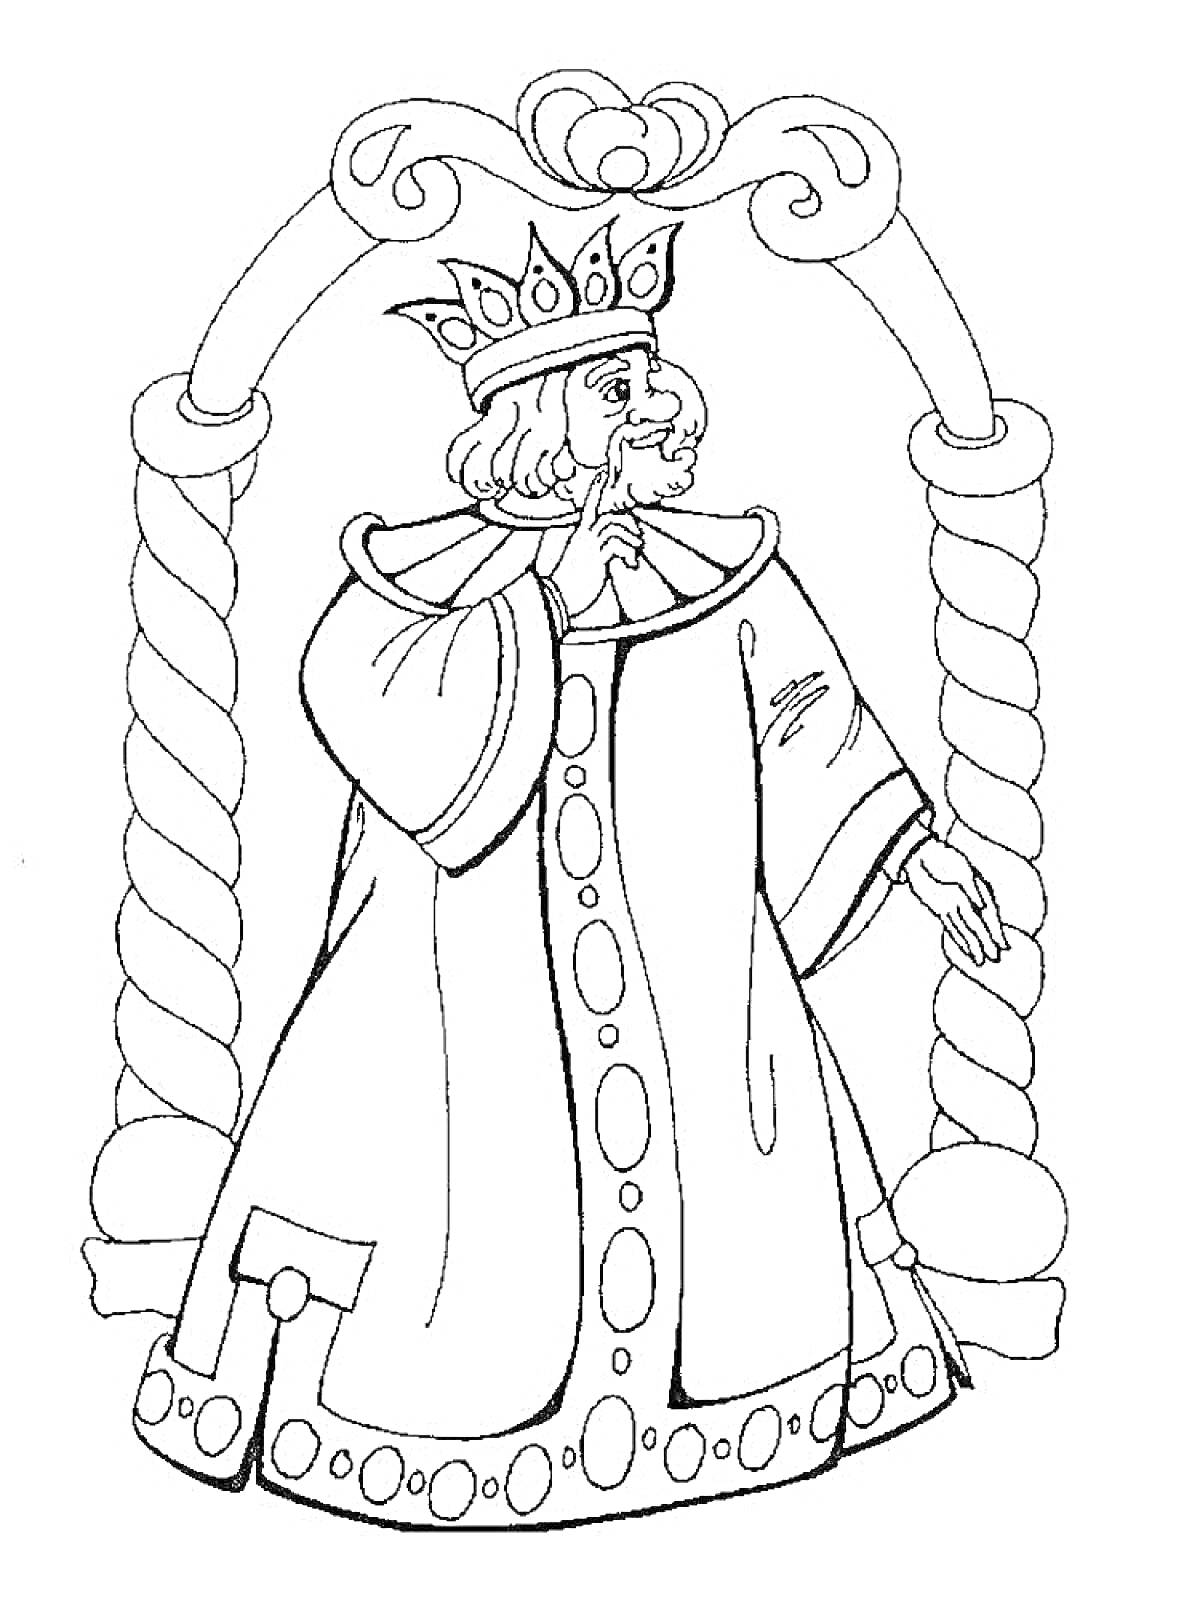 Раскраска Царь в короне и плаще в арке с завитками